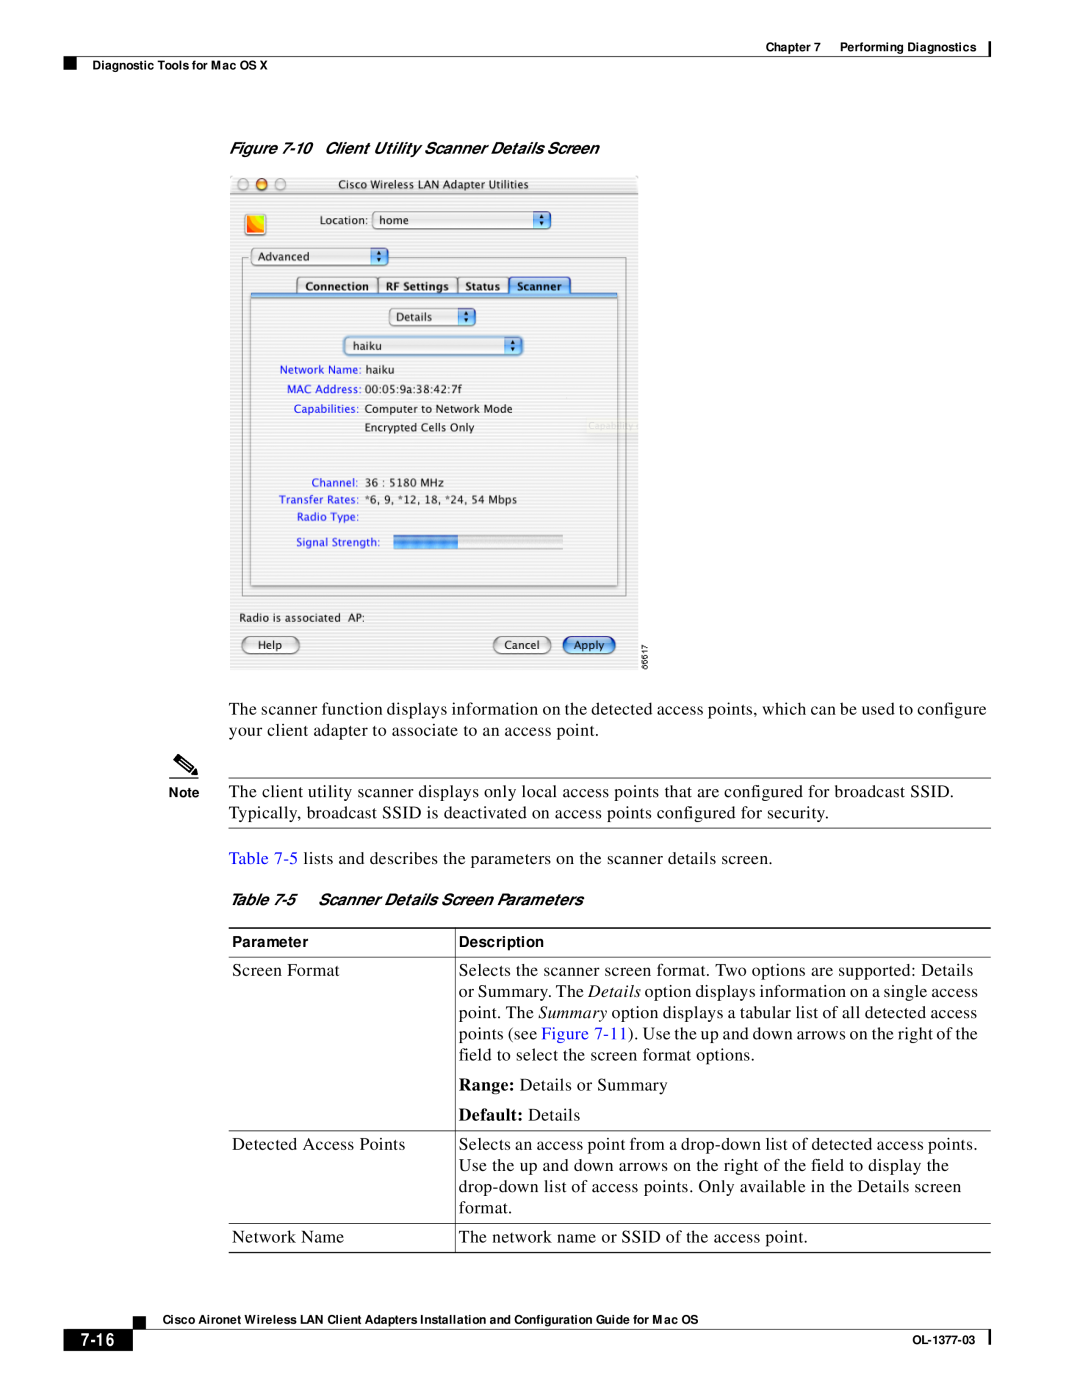 Cisco Systems OL-1377-03 manual Default Details, 7-16, Parameter, Description, 10 Client Utility Scanner Details Screen 